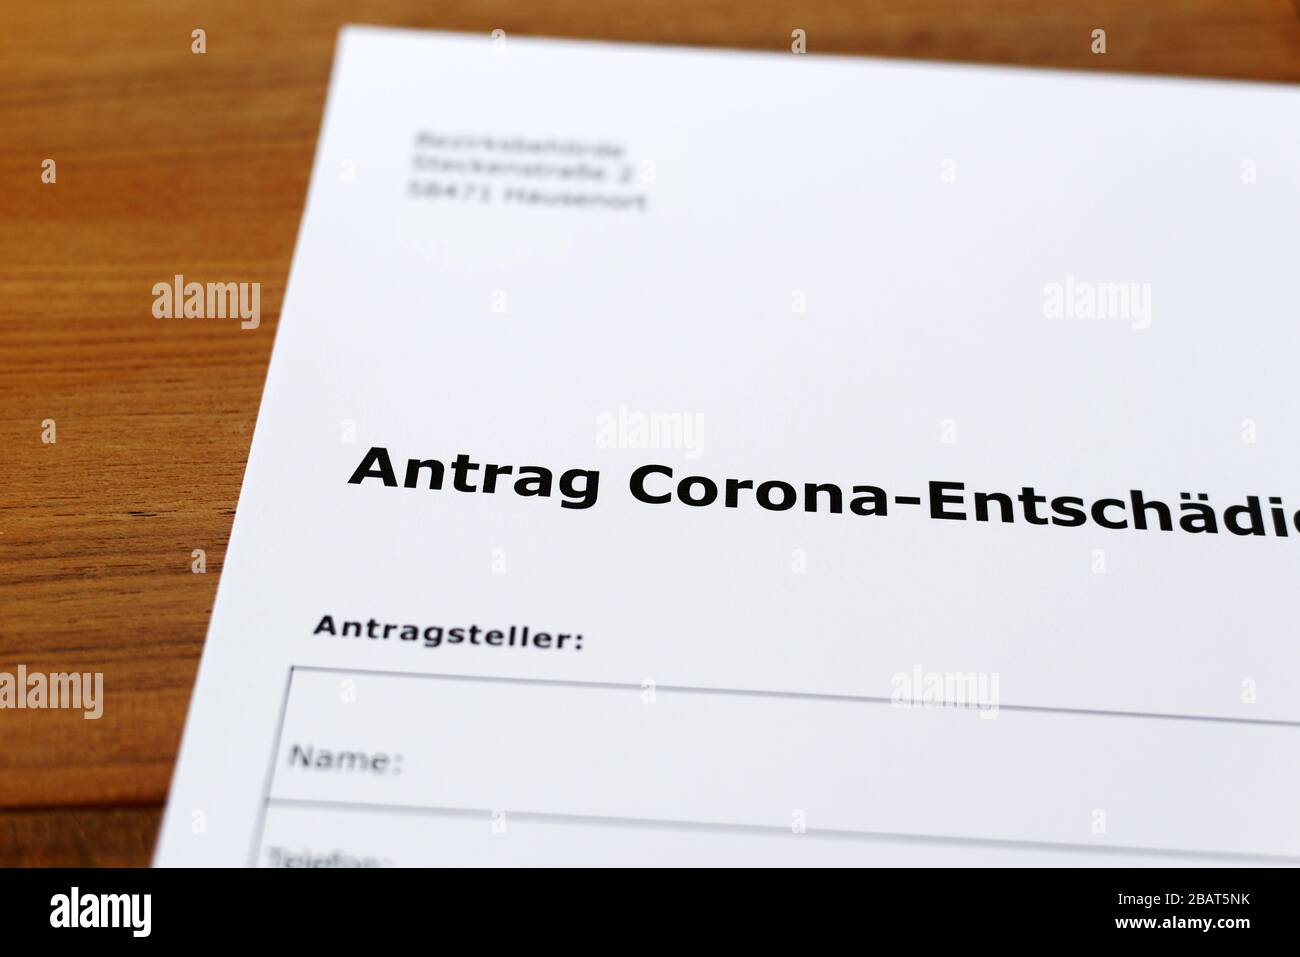 Una hoja de papel con las palabras alemanas 'Antrag Corona Entschädigung' - Traducción en englisch: Solicitud de indemnización Corona. Foto de stock